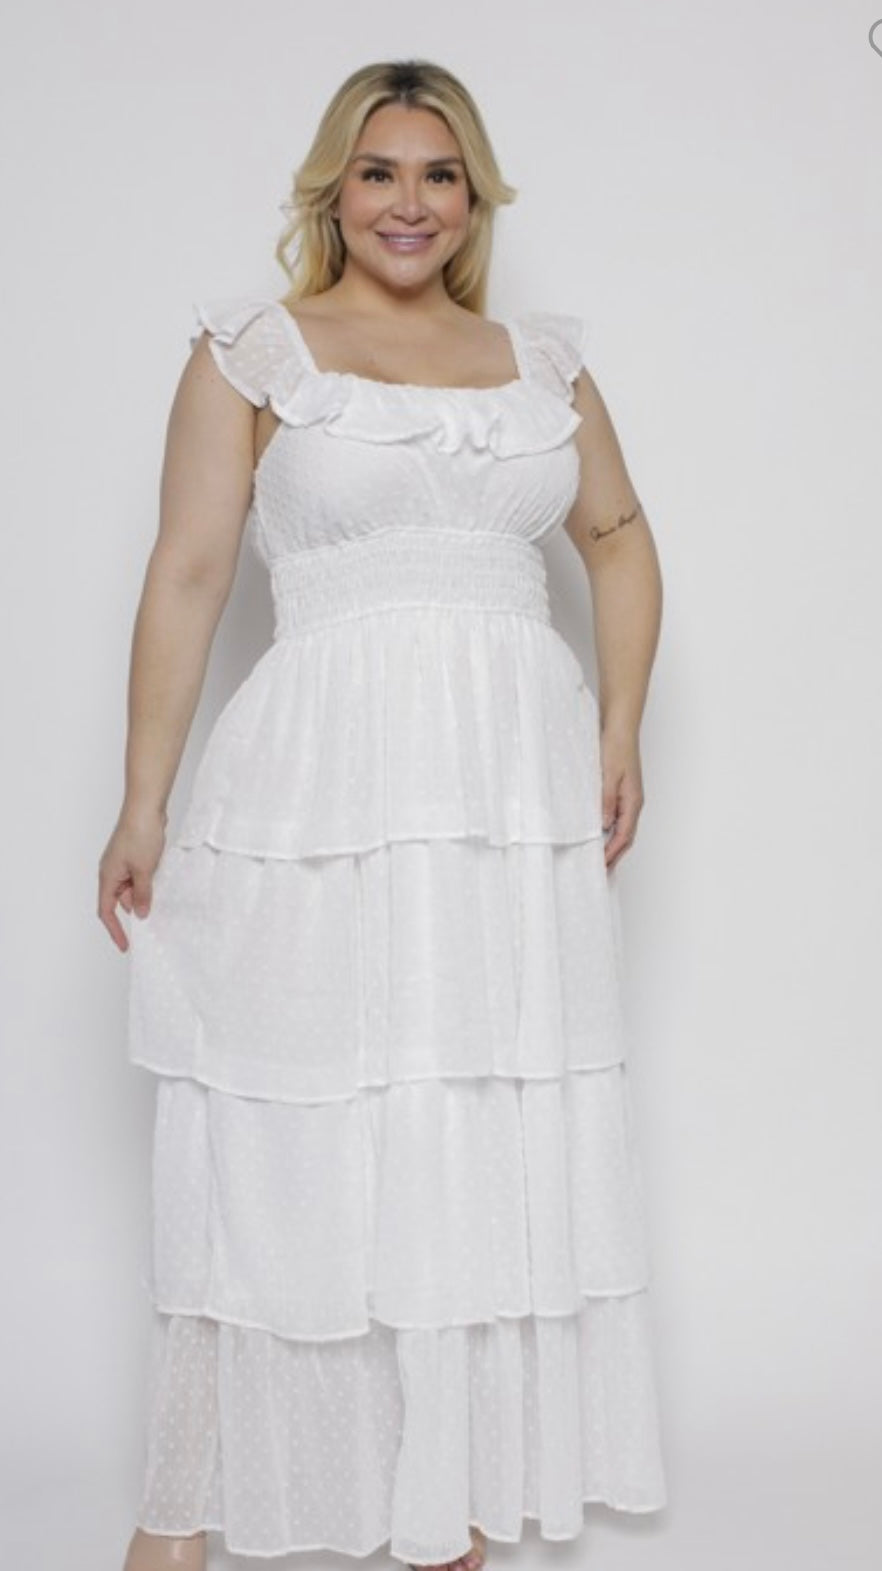 White Chiffon Ruffle Dress